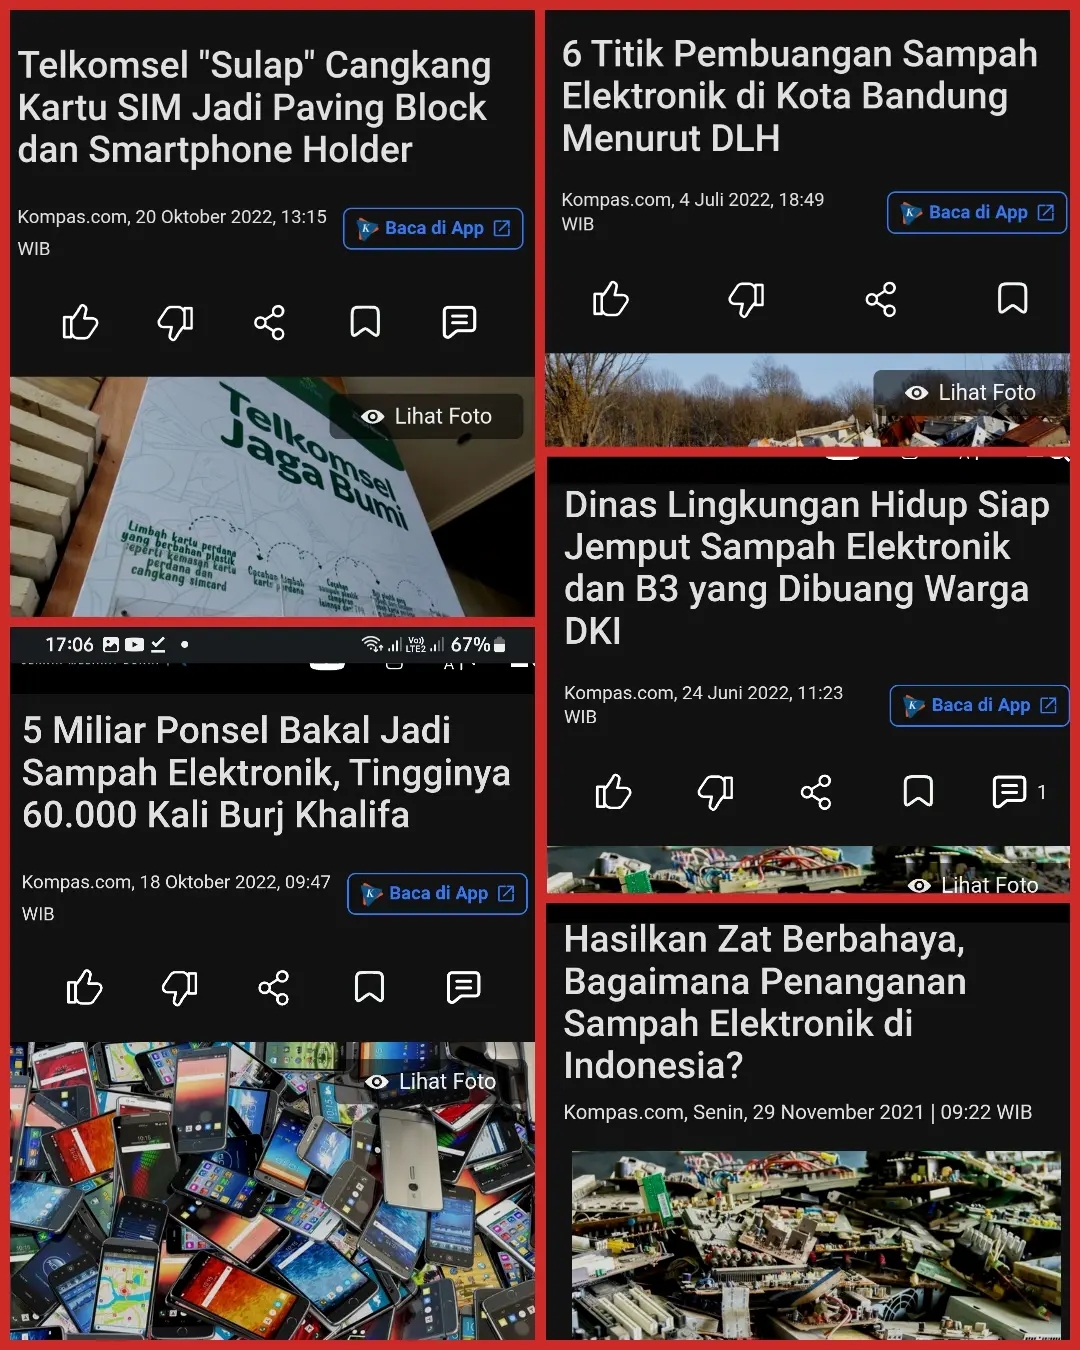 Masalah sampah elektronik di Indonesia